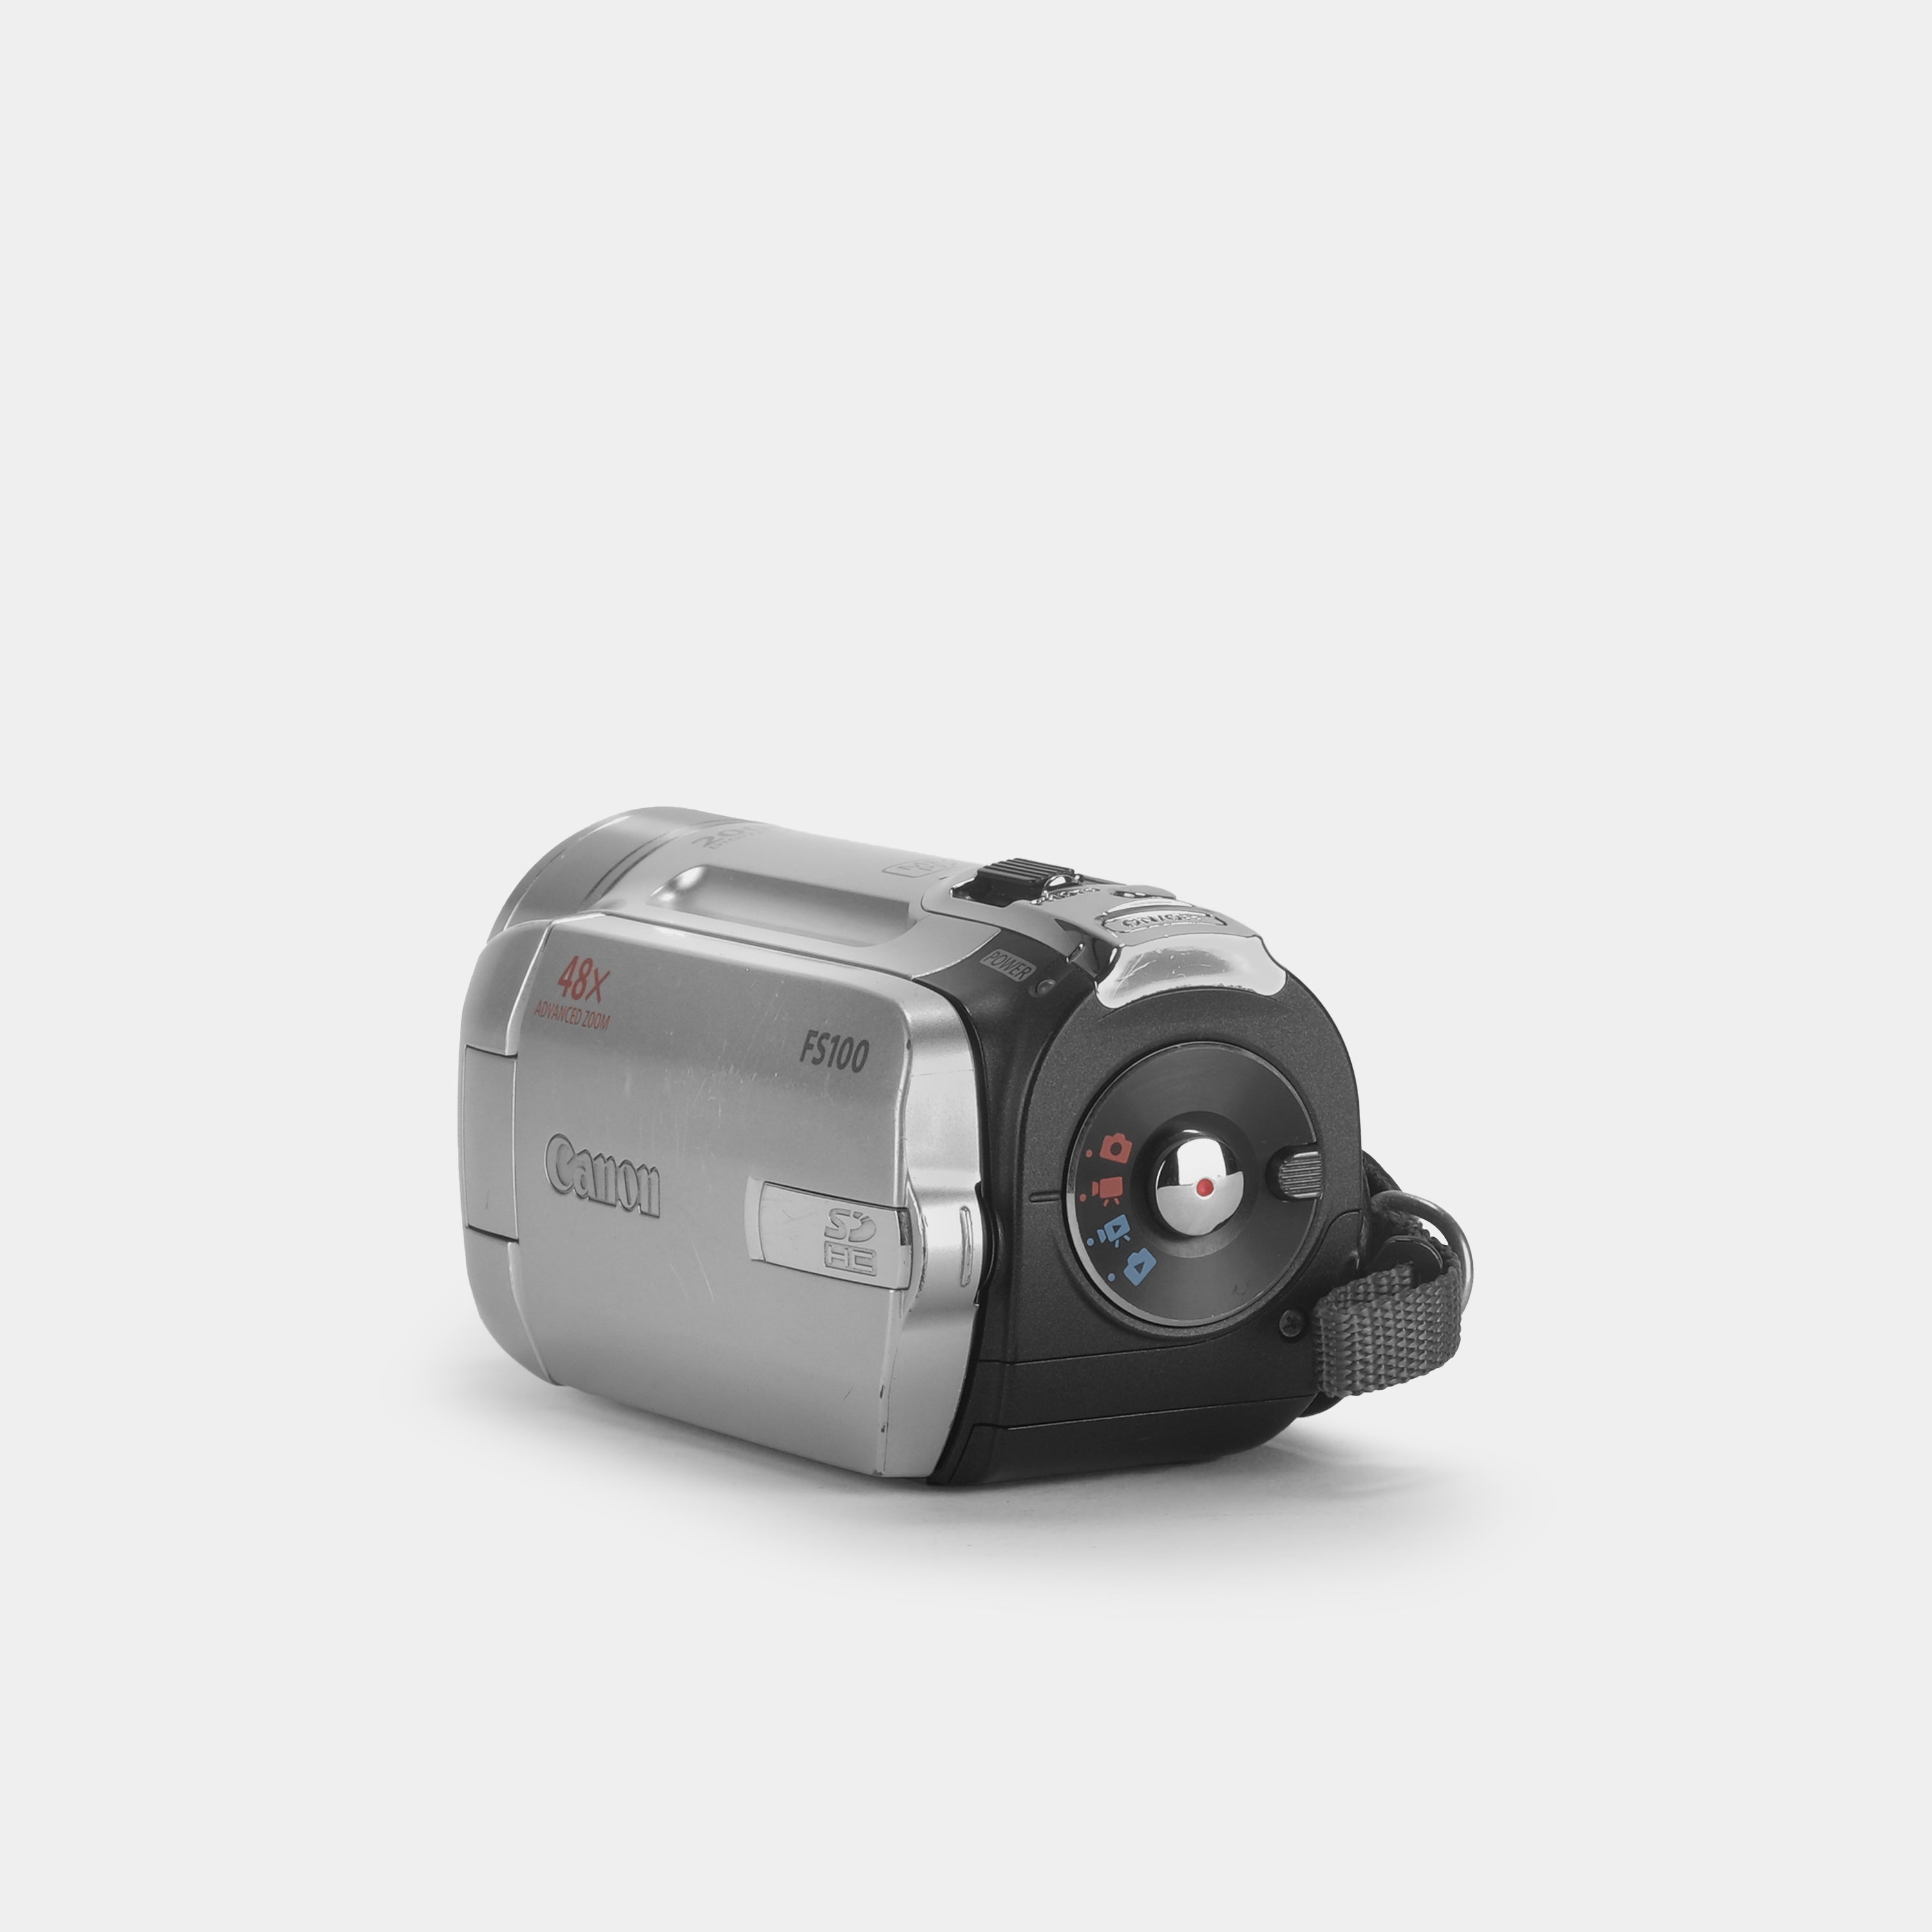 Canon FS100 Digital Video Camcorder